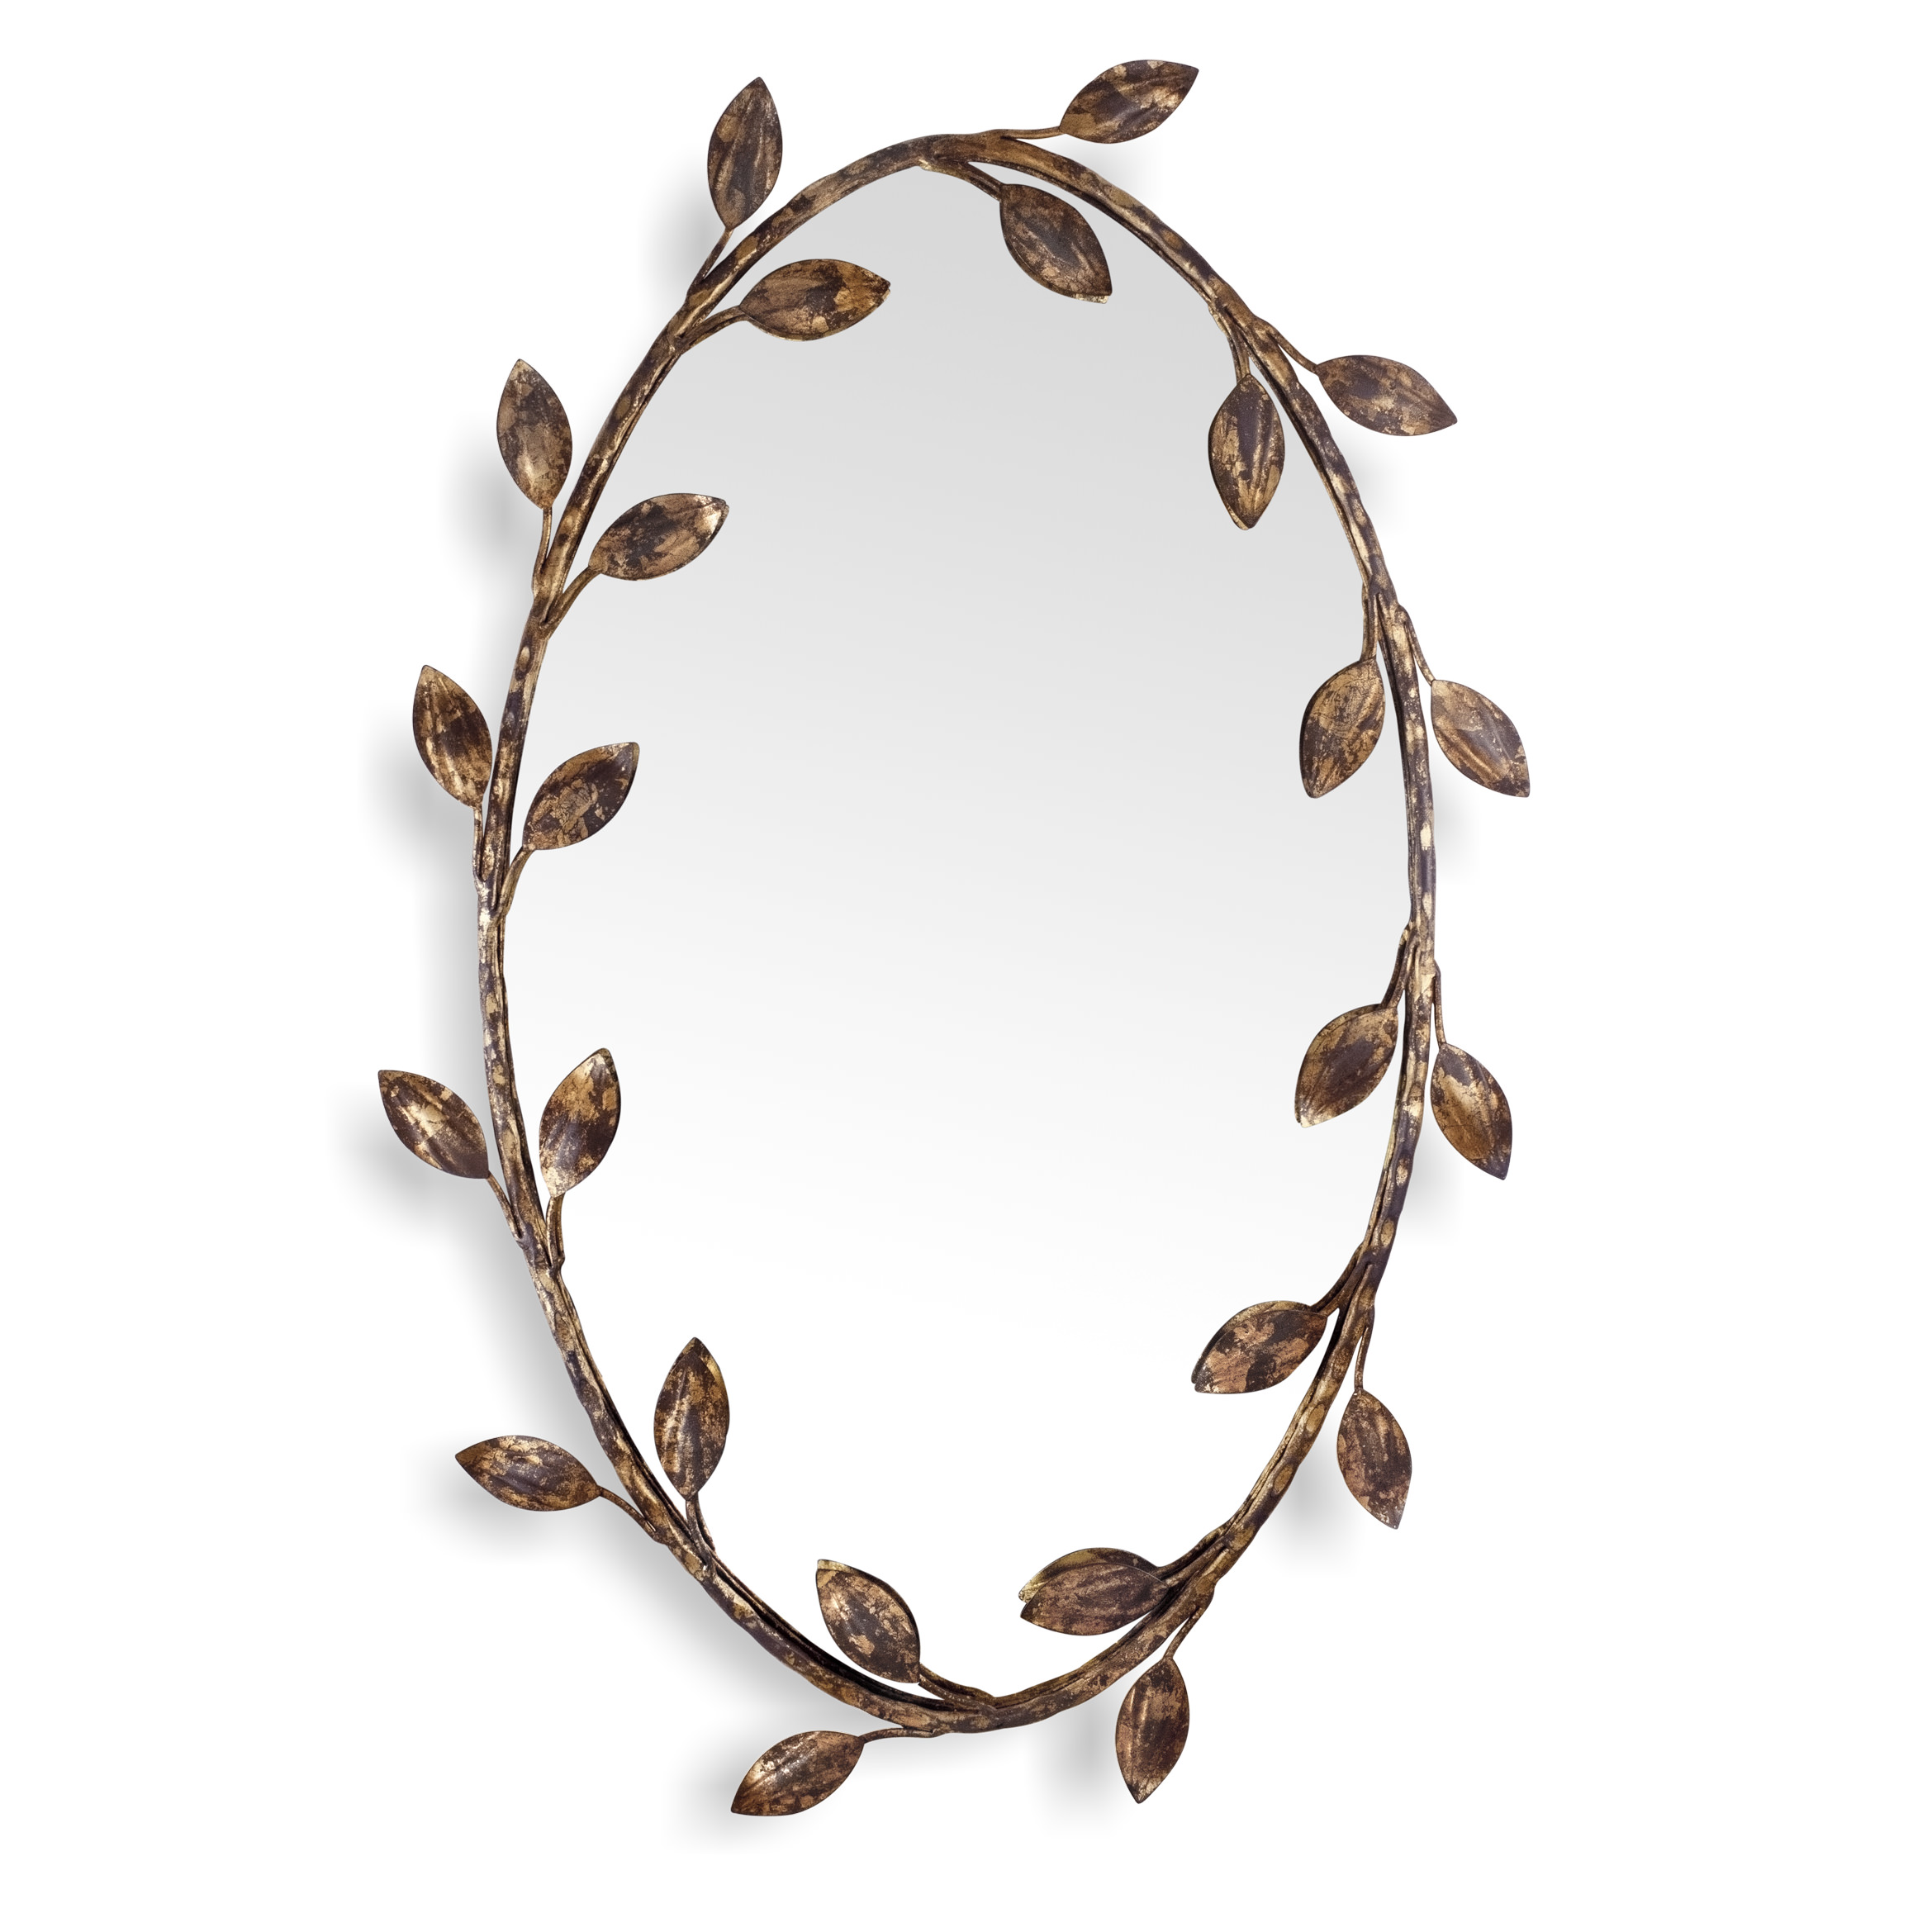 Купить Настенное зеркало Foliage Oval Mirror в интернет-магазине roooms.ru